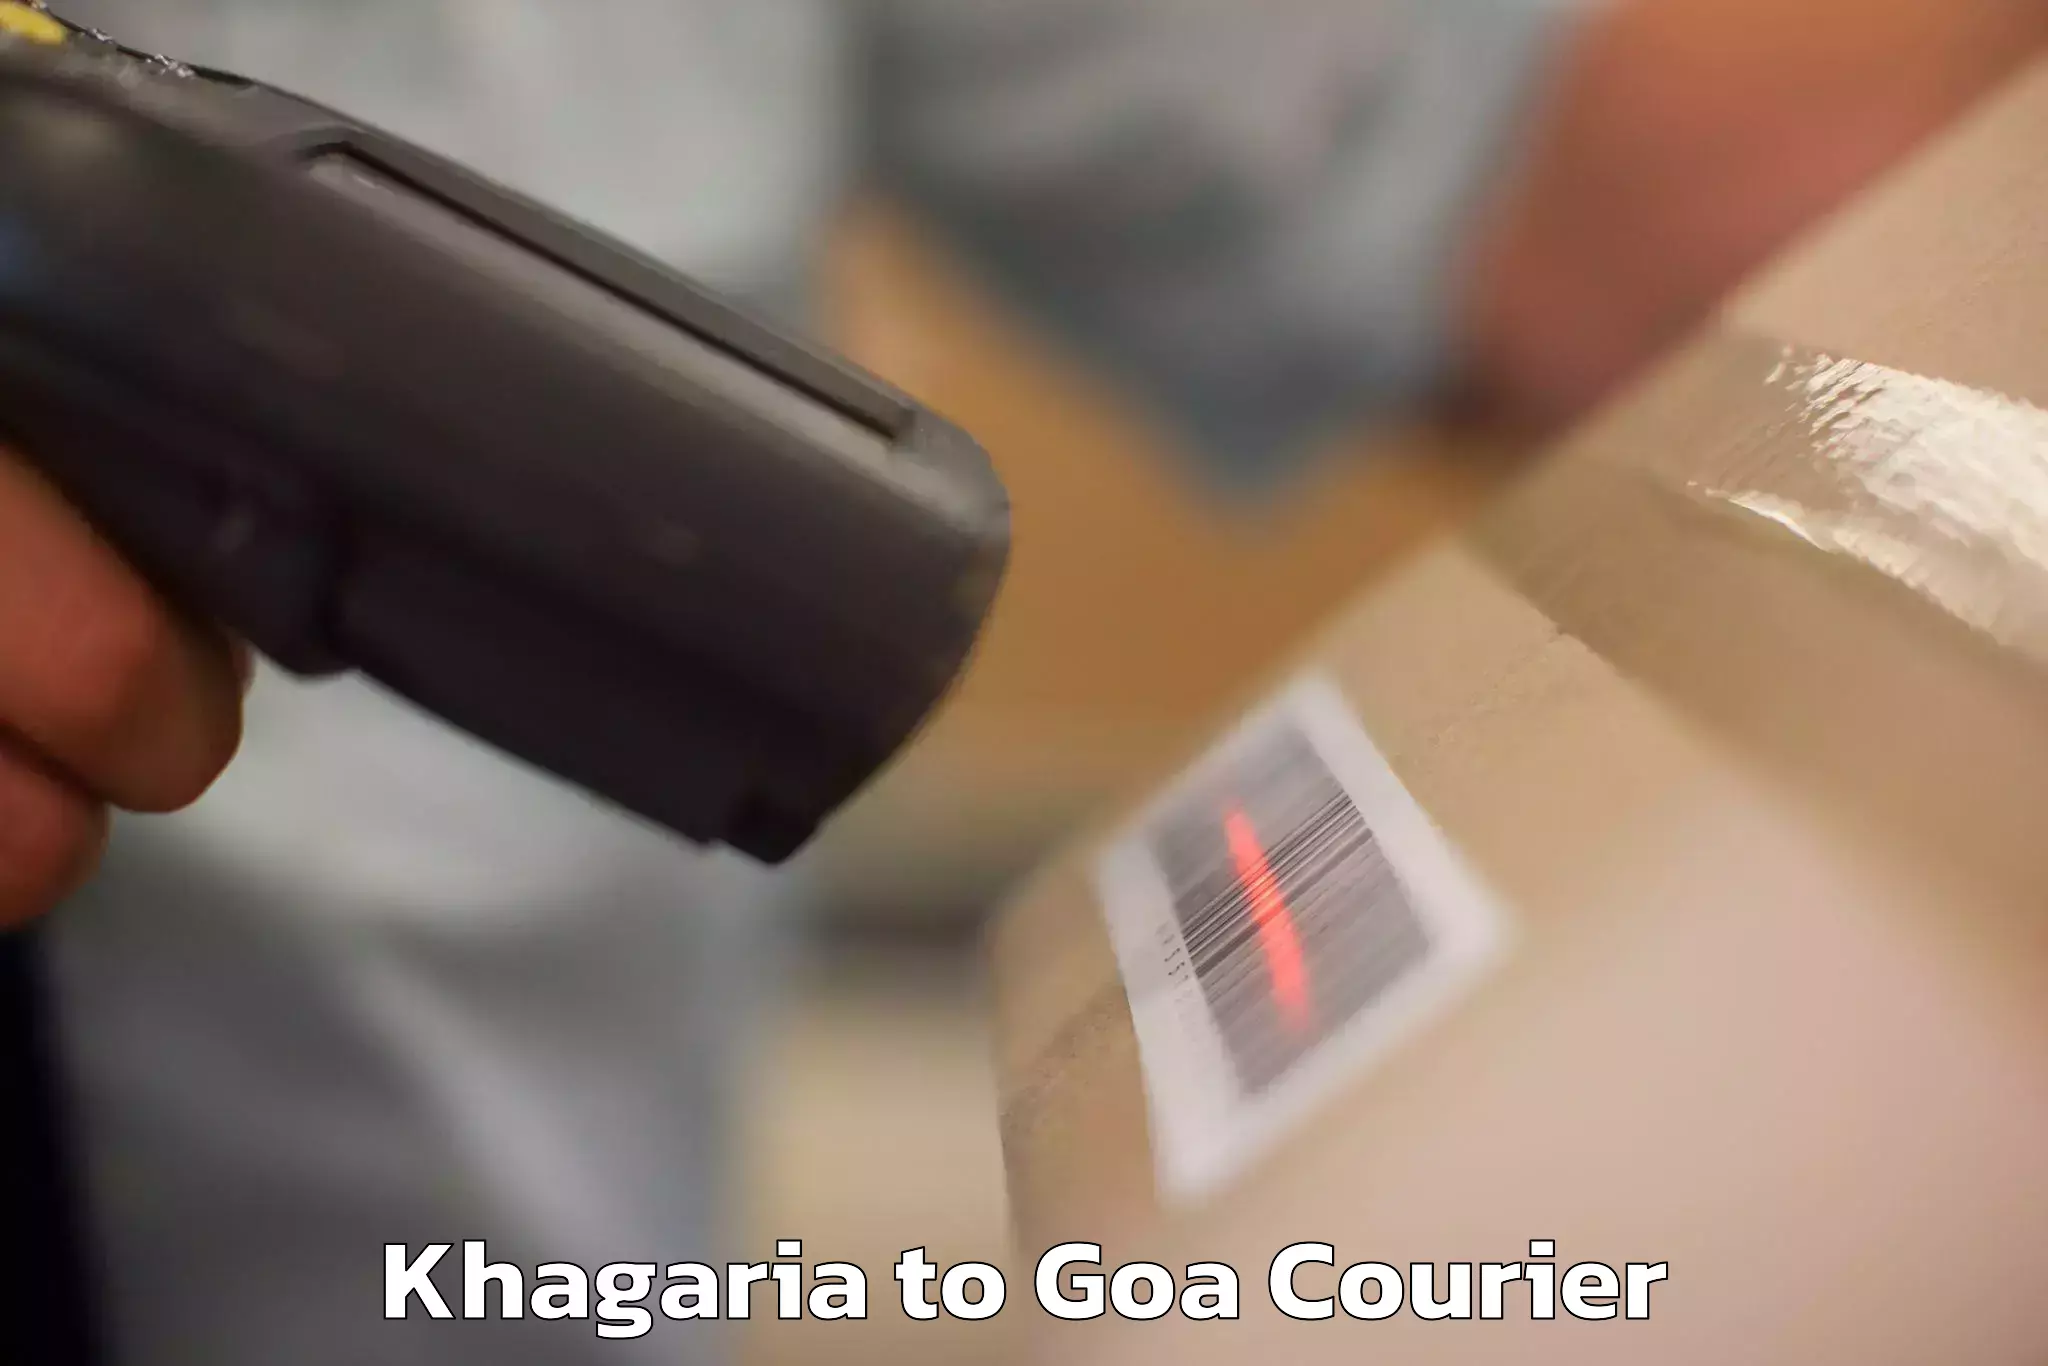 Door-to-door baggage service Khagaria to Bardez